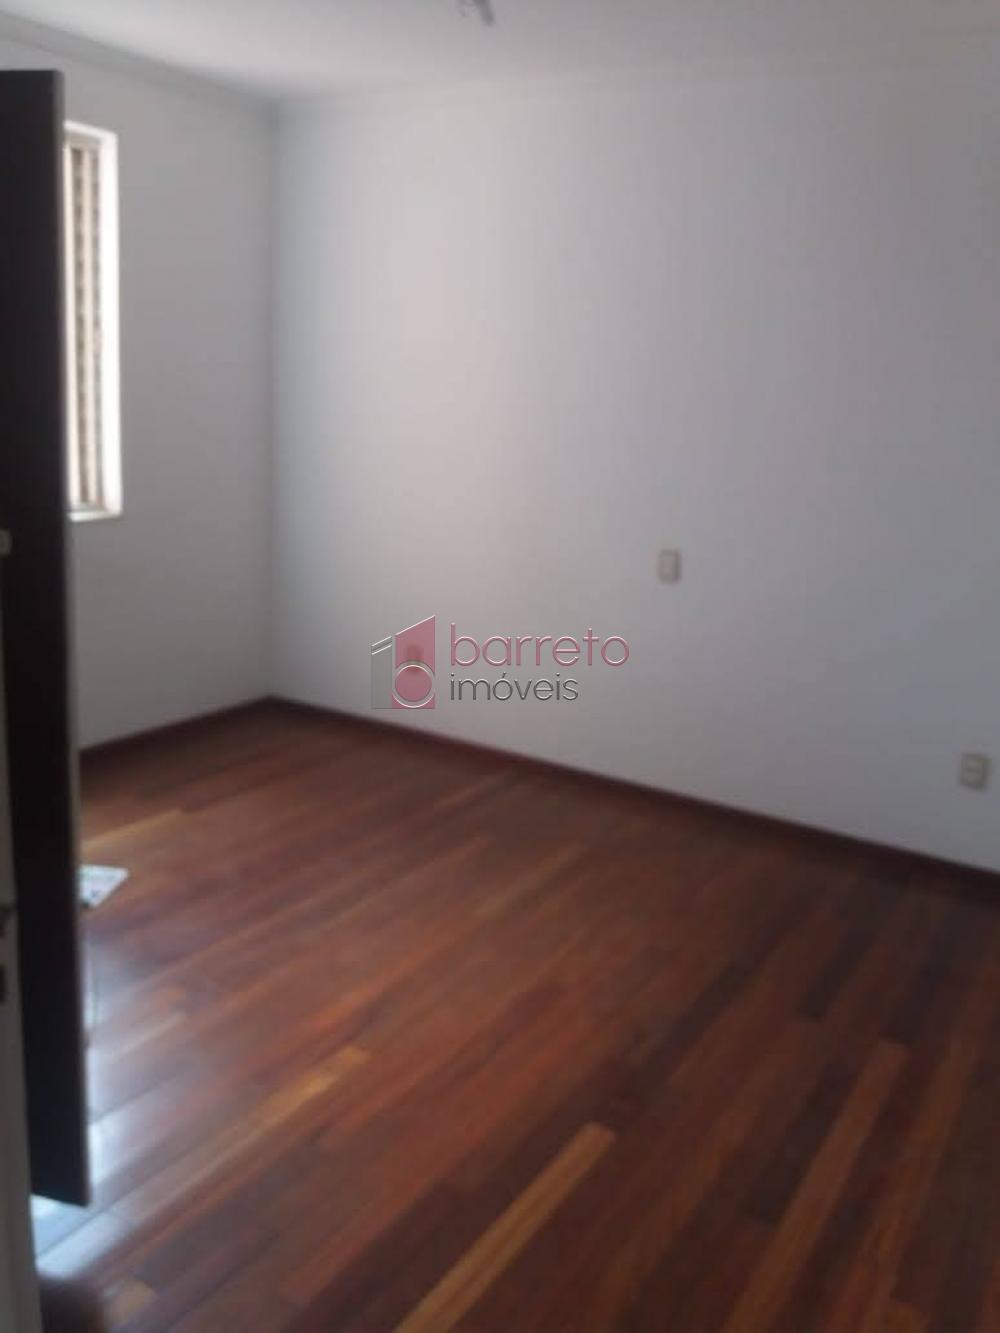 Alugar Apartamento / Padrão em Jundiaí R$ 2.000,00 - Foto 6